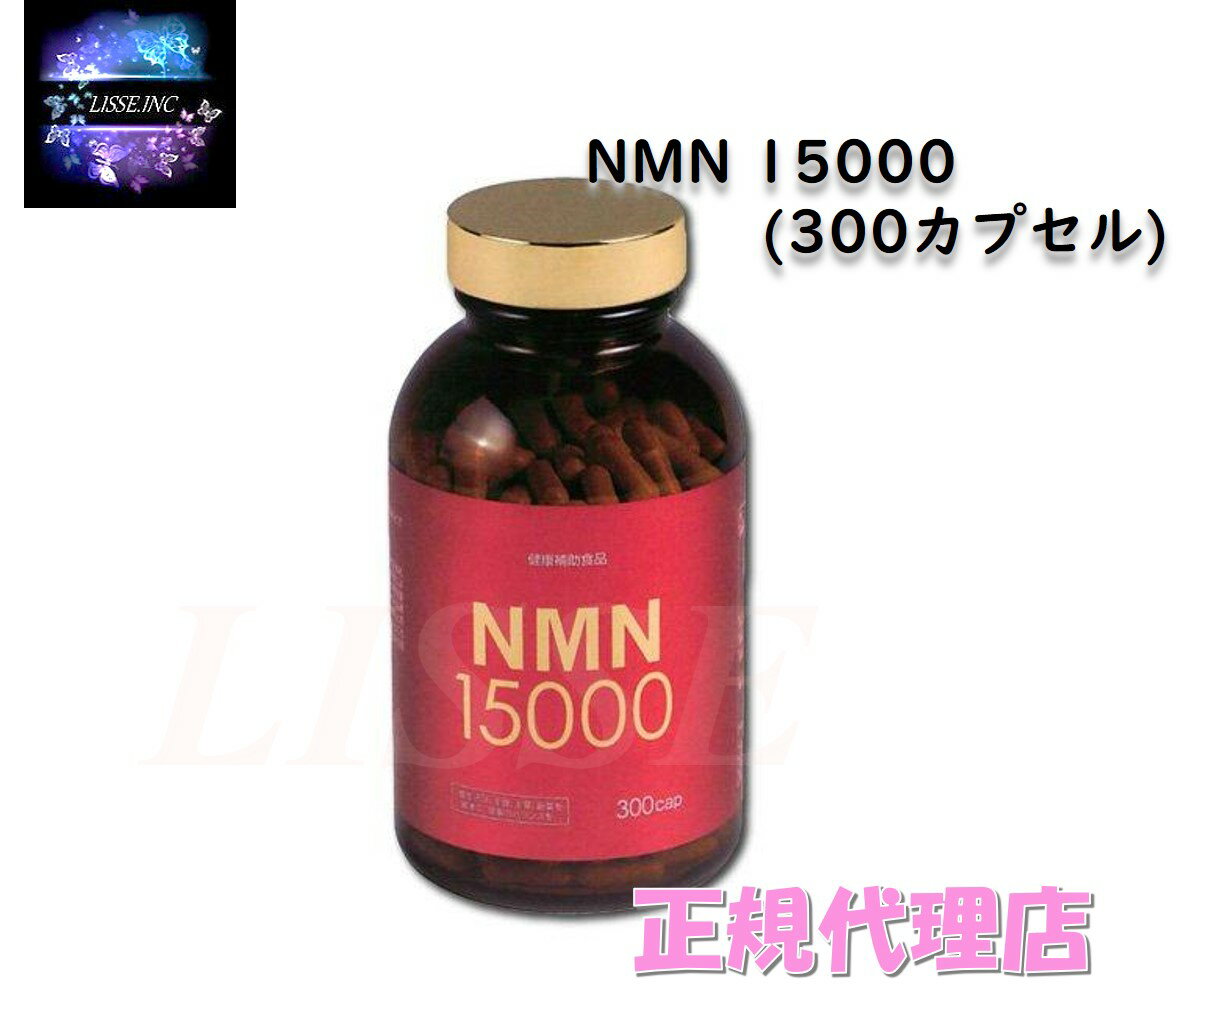 NMN 15000 (300カプセル) サプリメント ニコチンアミドモノヌクレオチド エンチーム 正規代理店